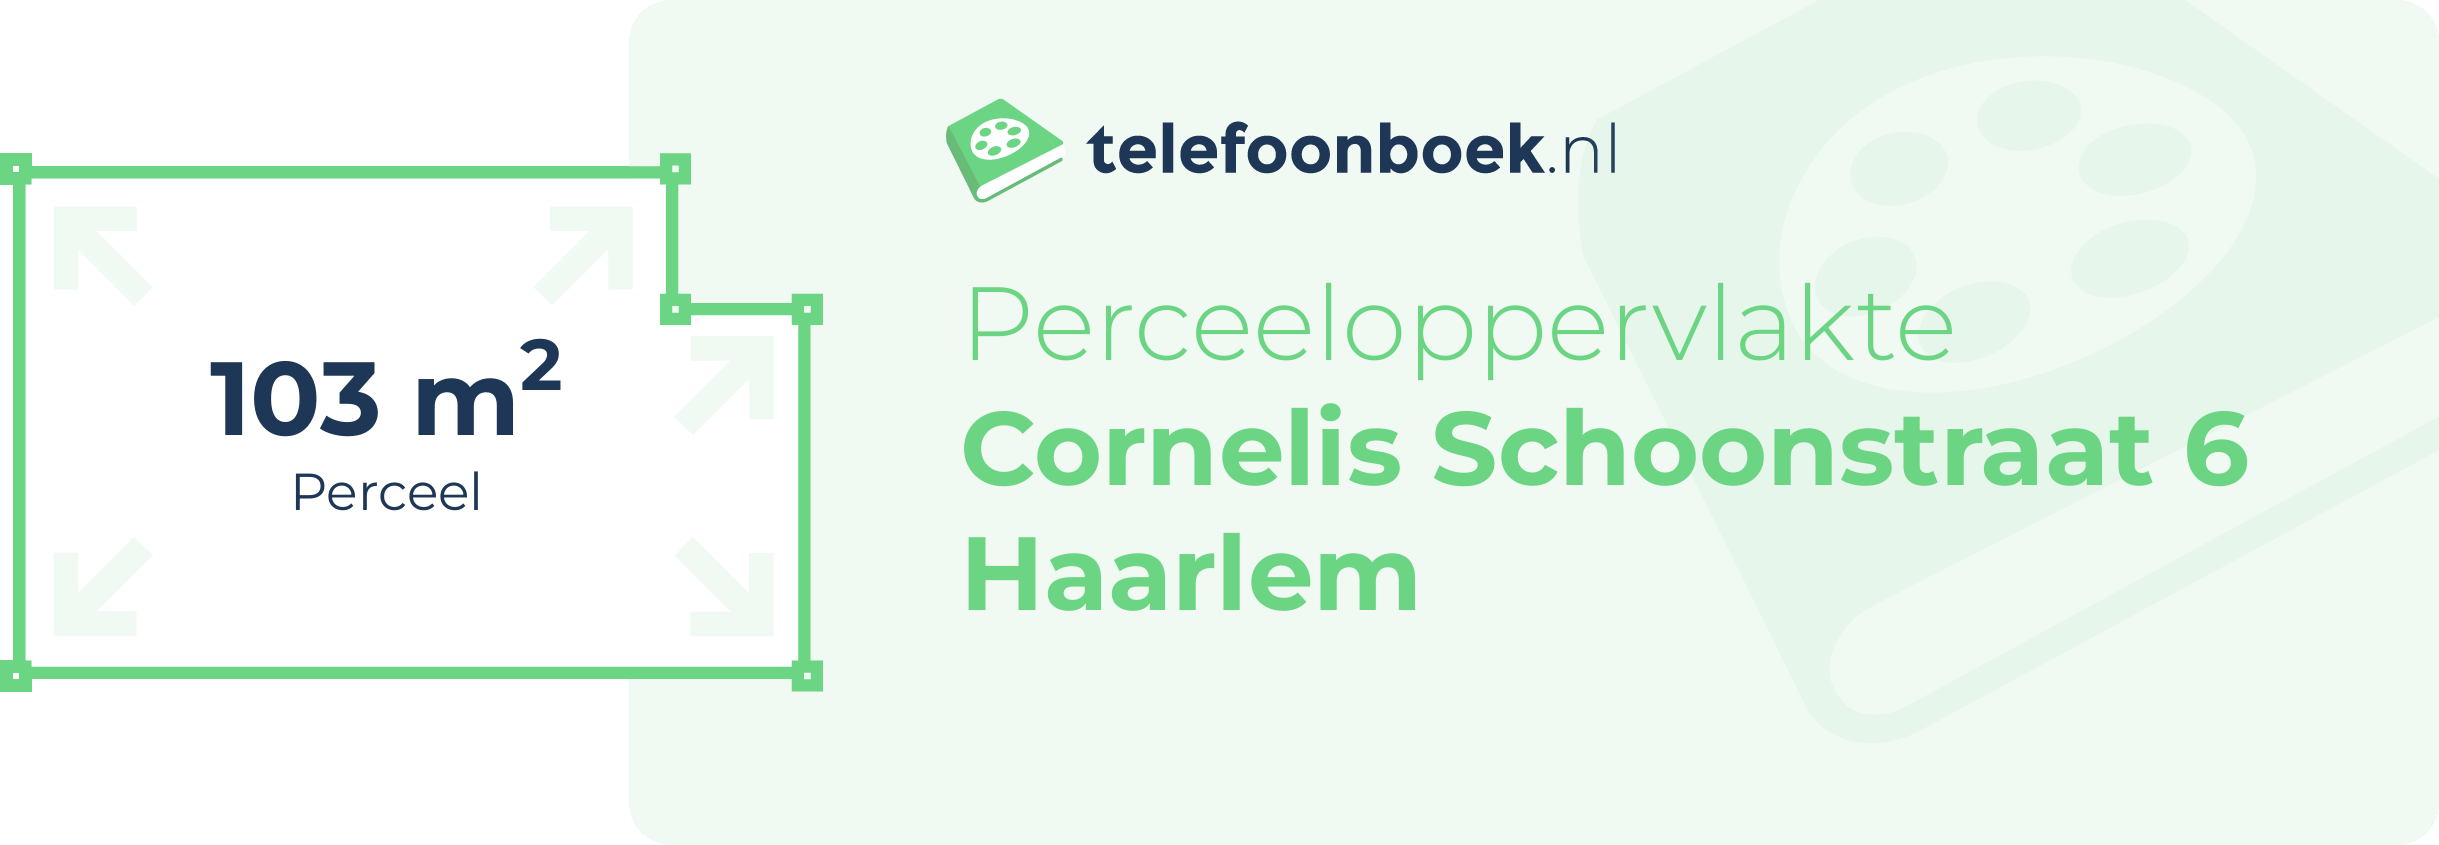 Perceeloppervlakte Cornelis Schoonstraat 6 Haarlem